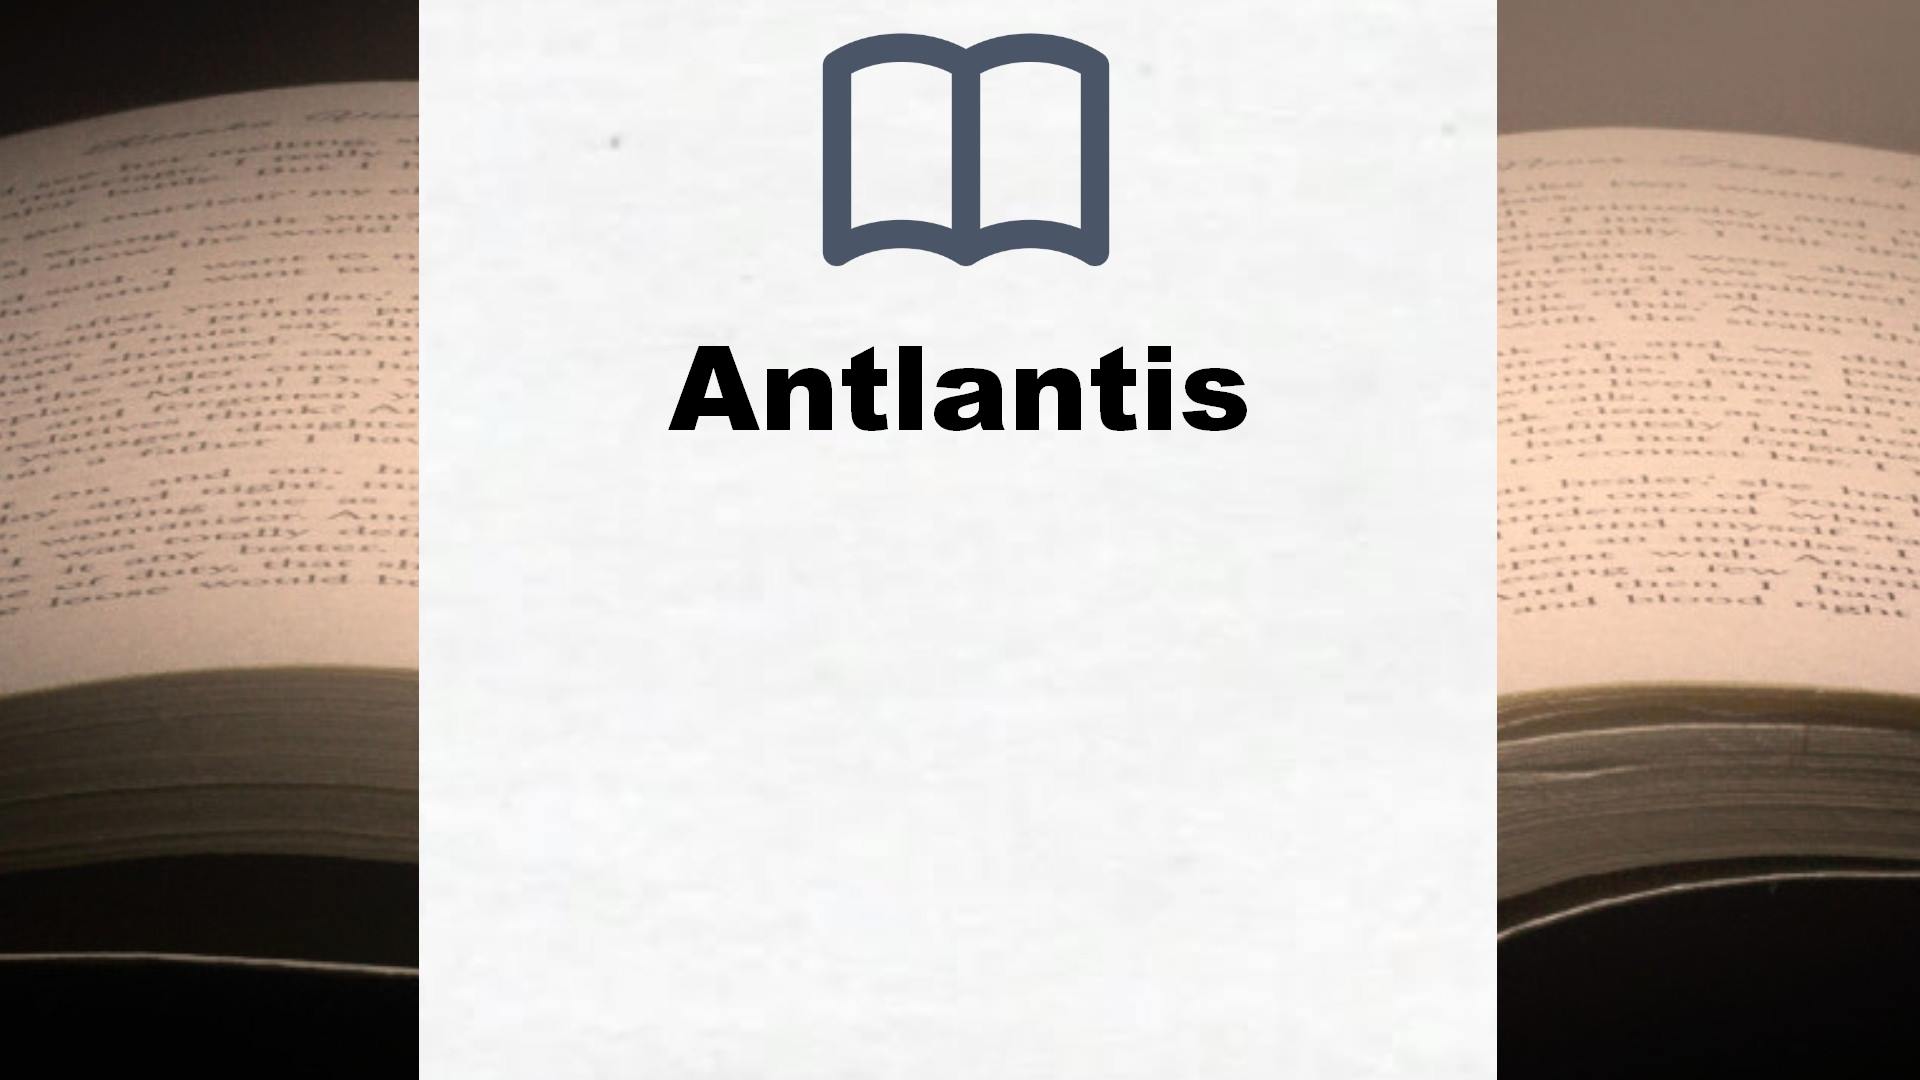 Bücher über Antlantis